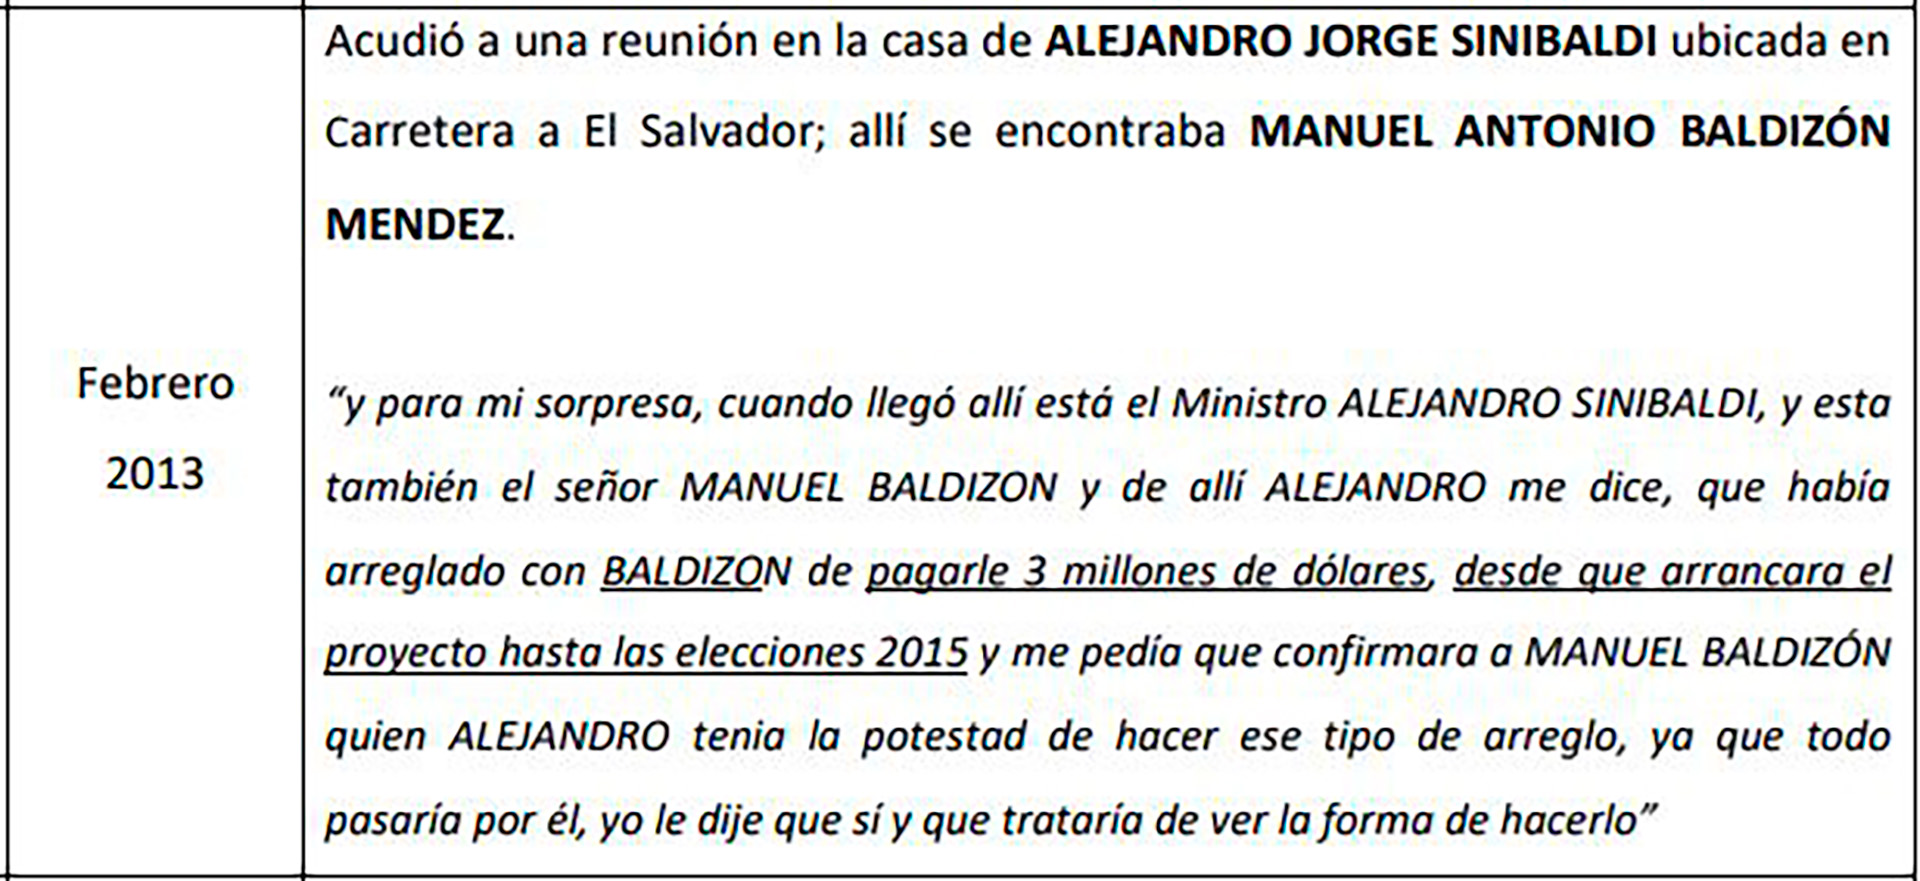 Extracto de un informe de investigación de CICIG que muestra testimonio que implican a Baldizón en sobornos de Odebrecht. 